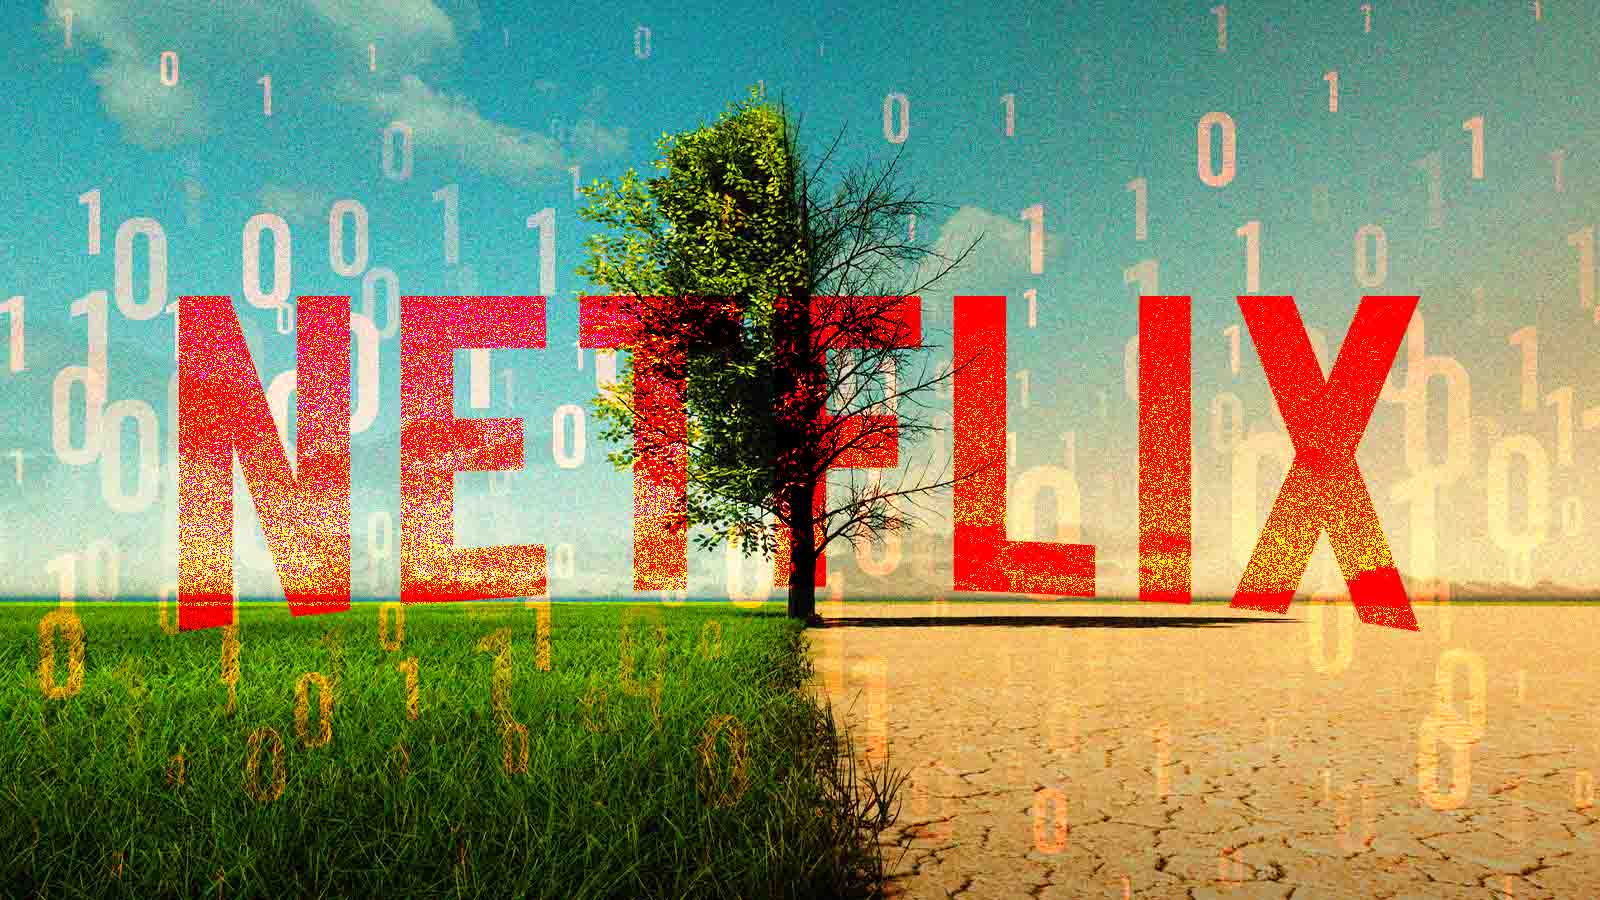 Como a Netflix consegue ser a marca que mais engaja no Instagram